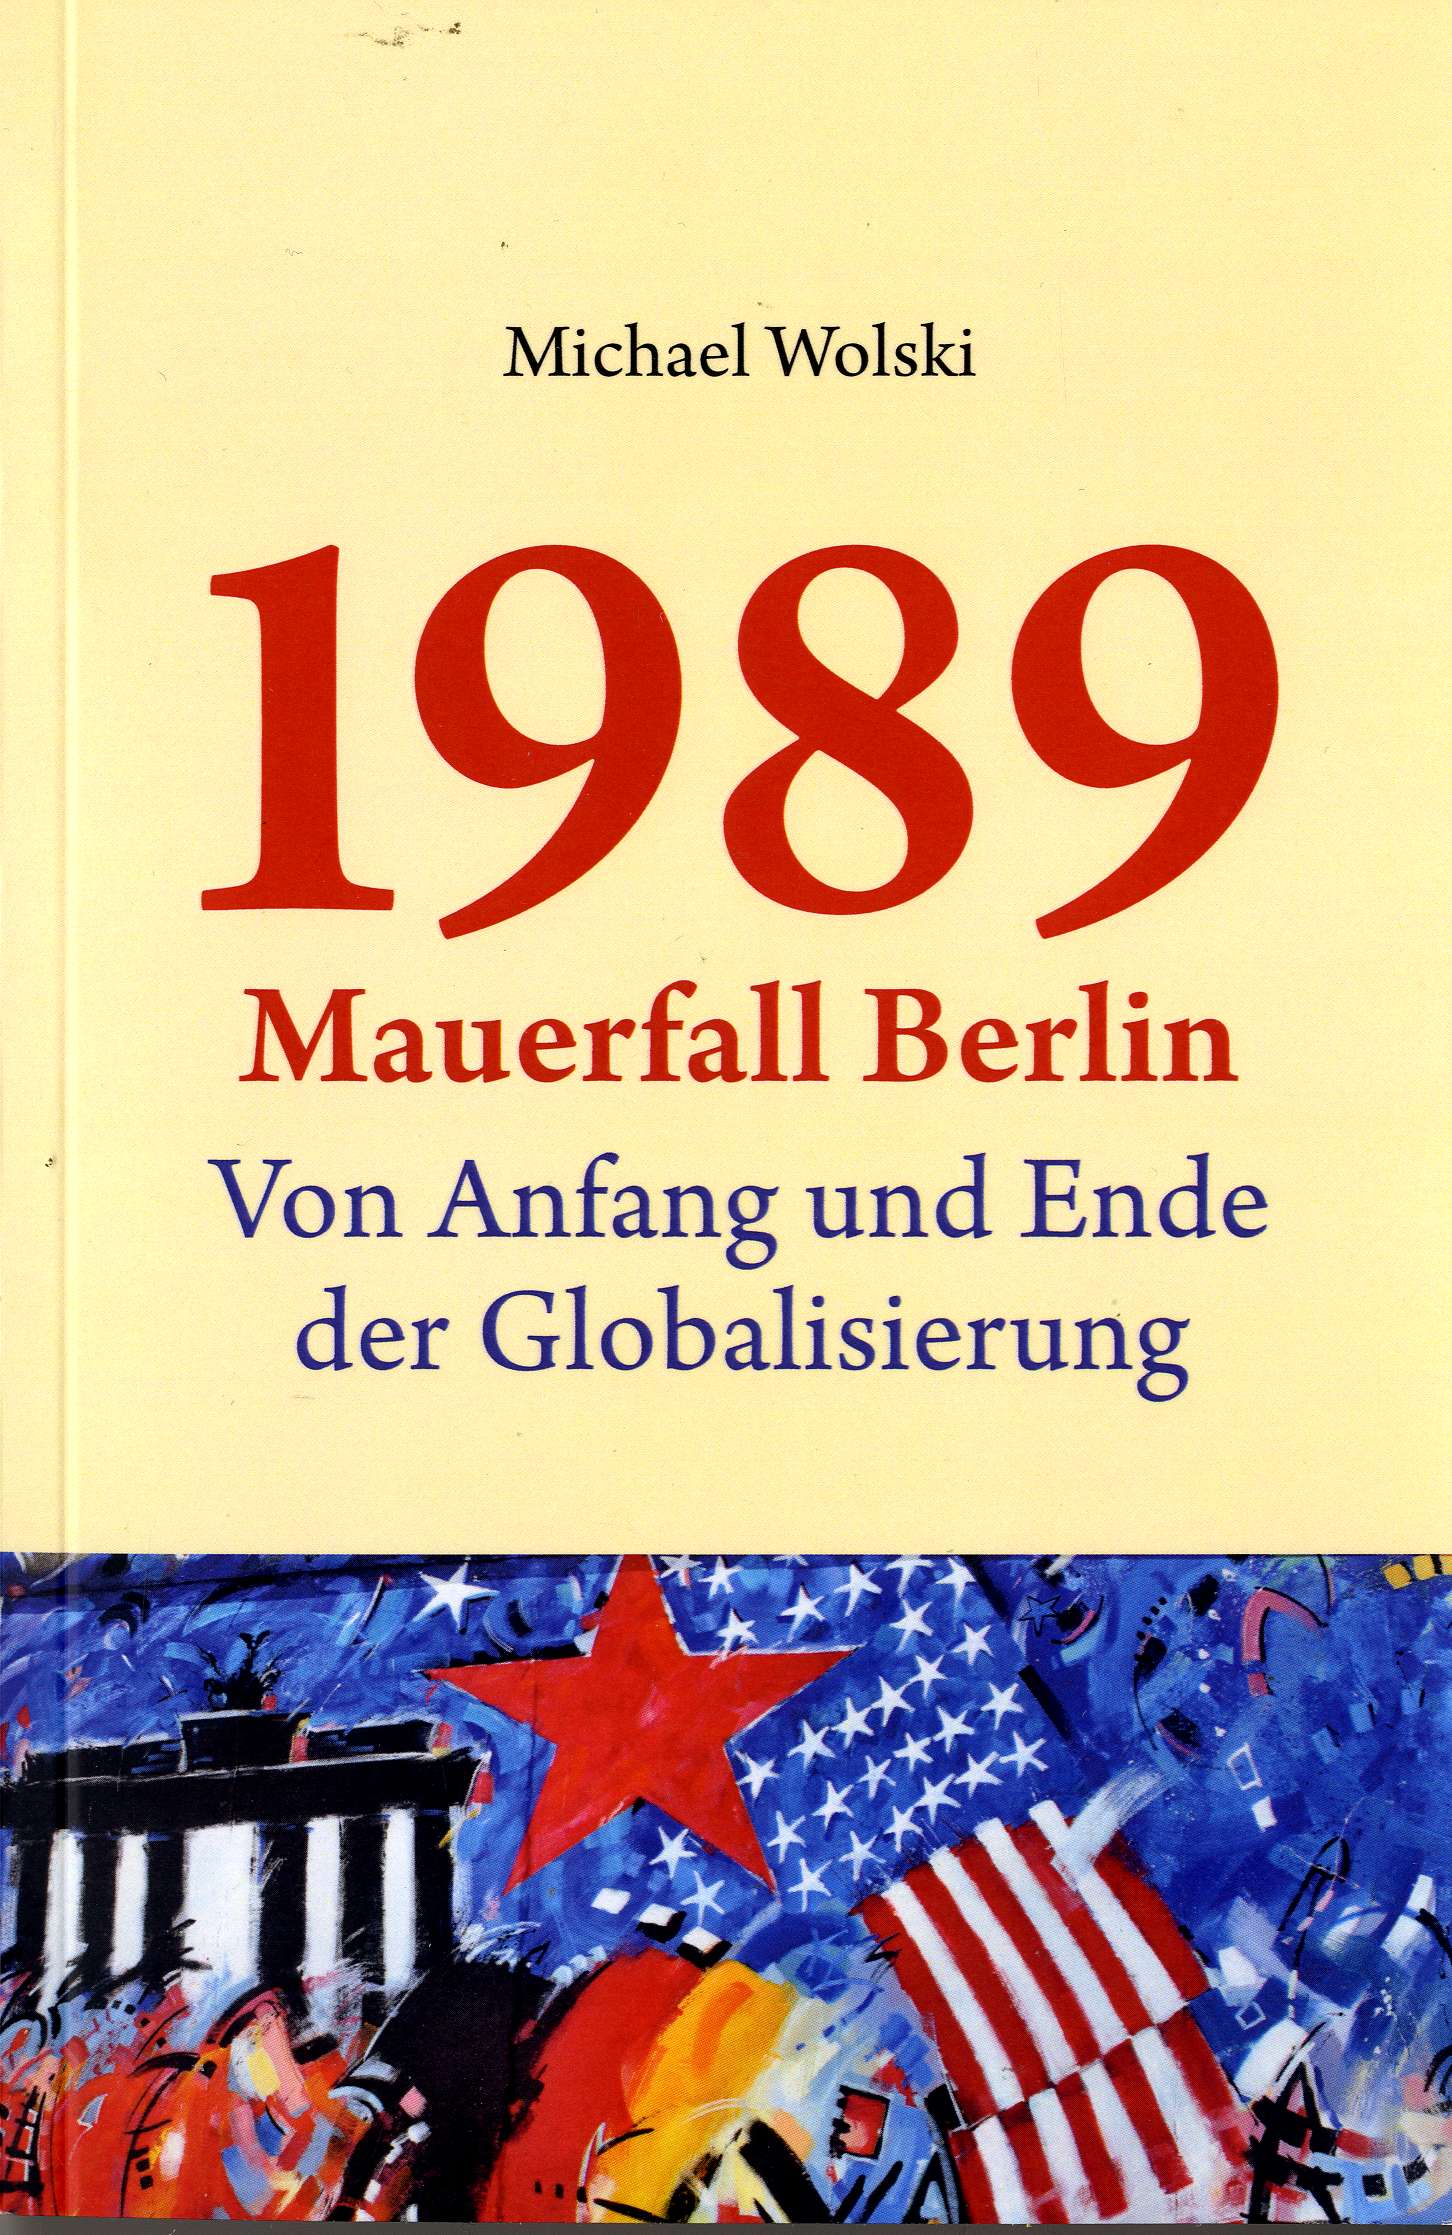 1989-Globalisierung001